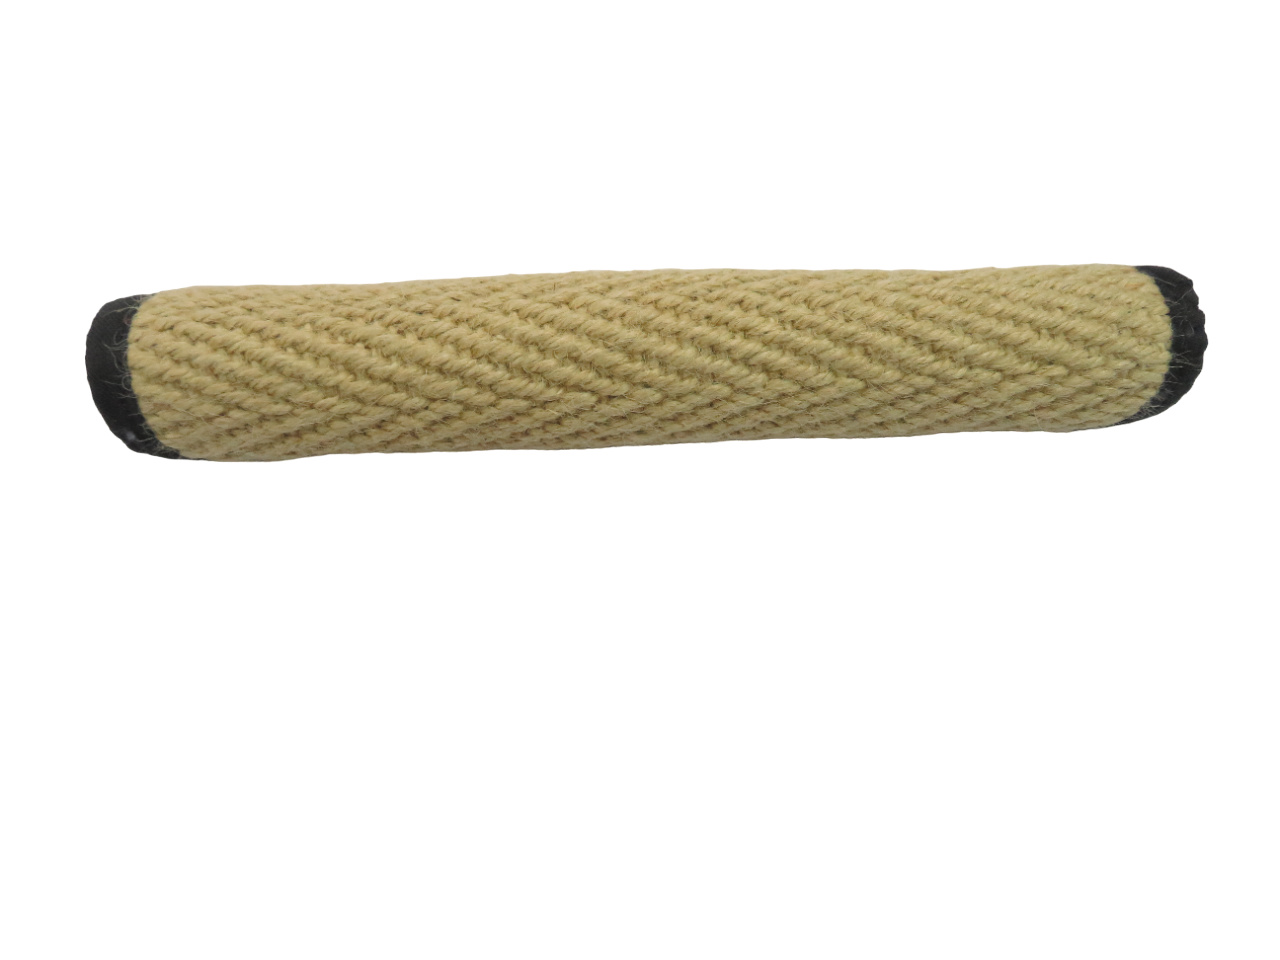 BOW WOW BOW WOW джутовая палка без ручки (натуральная) (200 г) bow wow bow wow натуральная джутовая кость с черной тканью 20х7 см